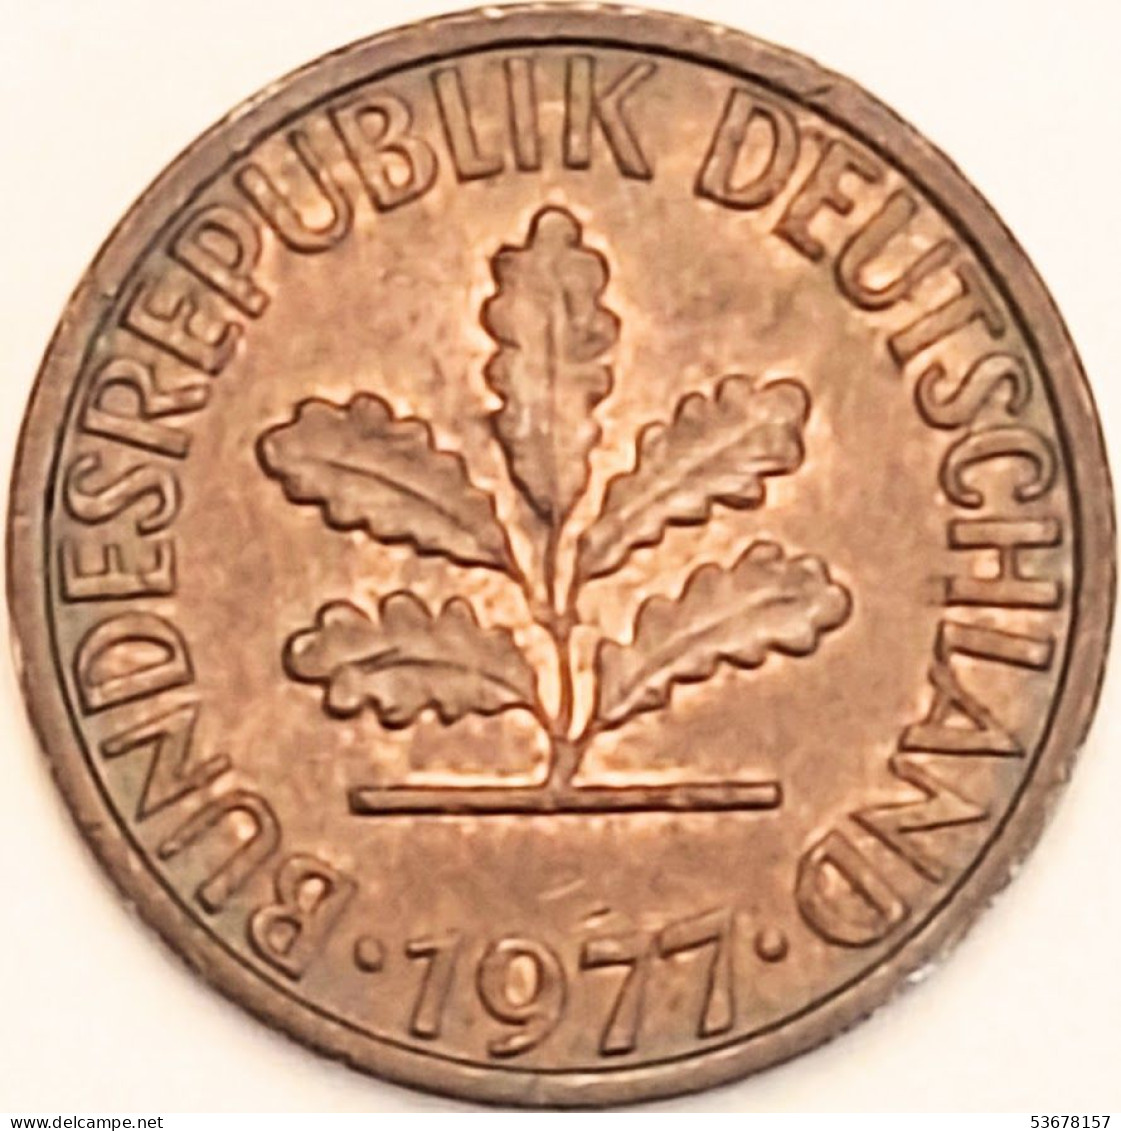 Germany Federal Republic - Pfennig 1977 F, KM# 105 (#4472) - 1 Pfennig